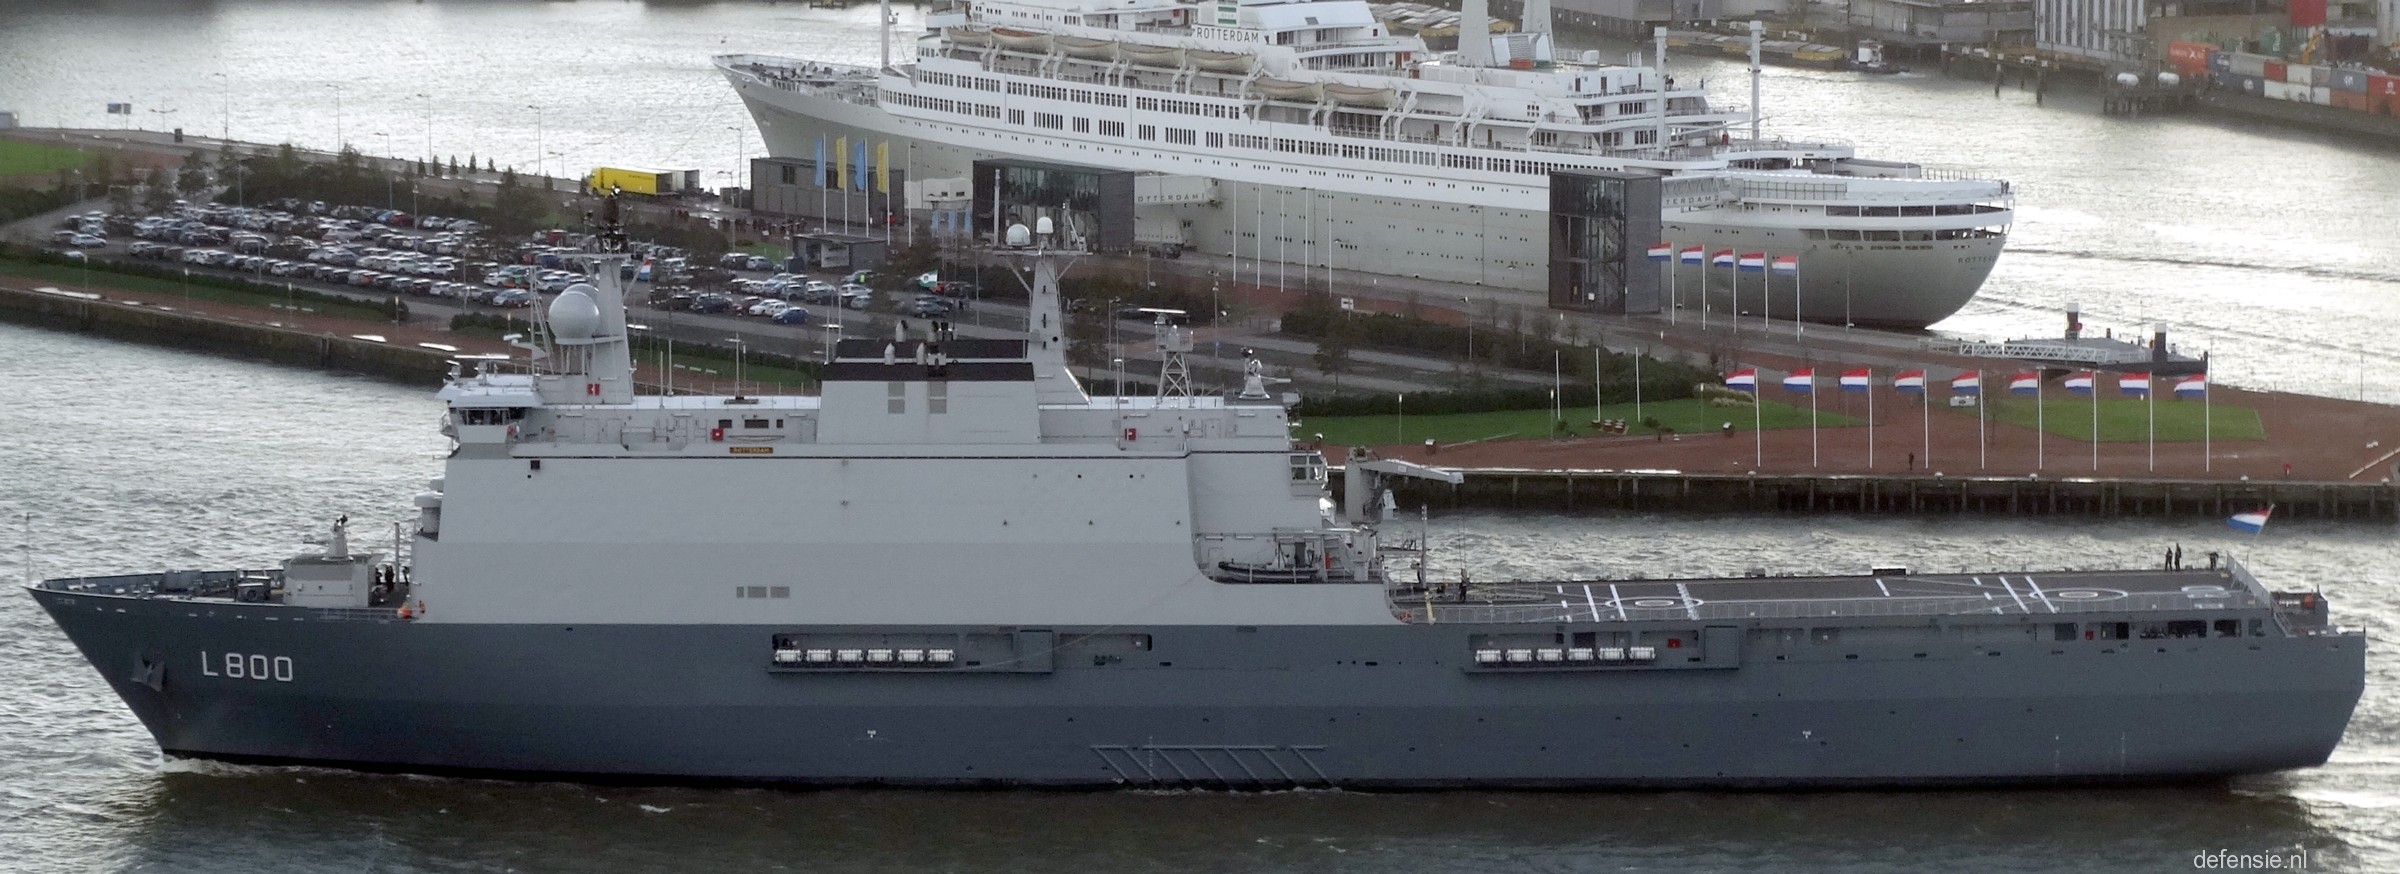 eindpunt Meer dan wat dan ook Zonder twijfel HNLMS Rotterdam L-800 Amphibious Ship Netherlands Navy